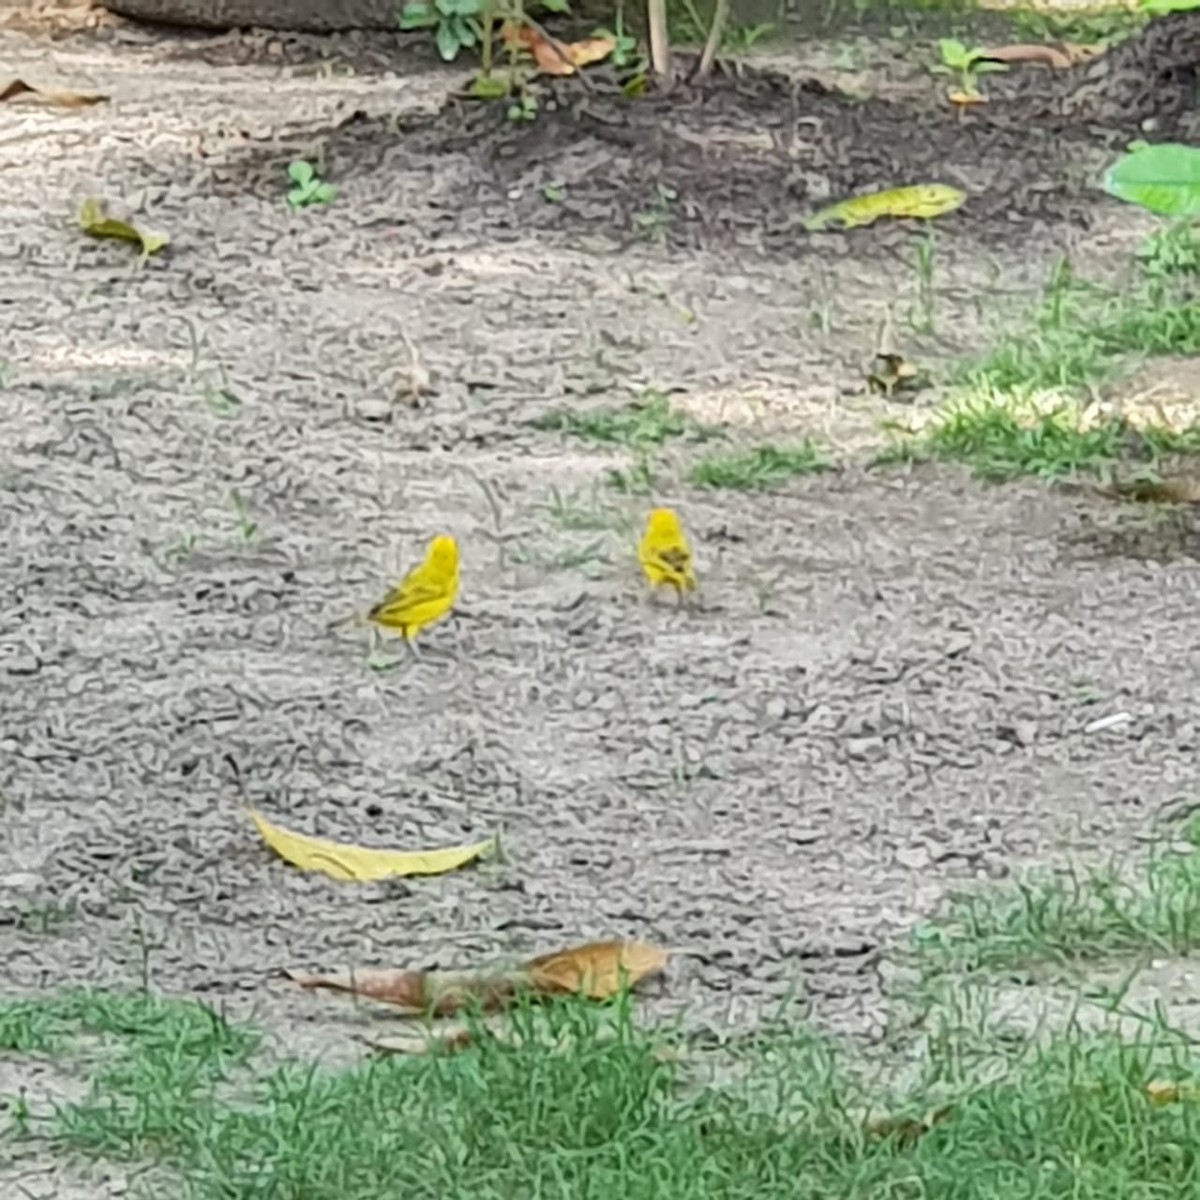 Yellow Warbler - alcaravanes  gabo